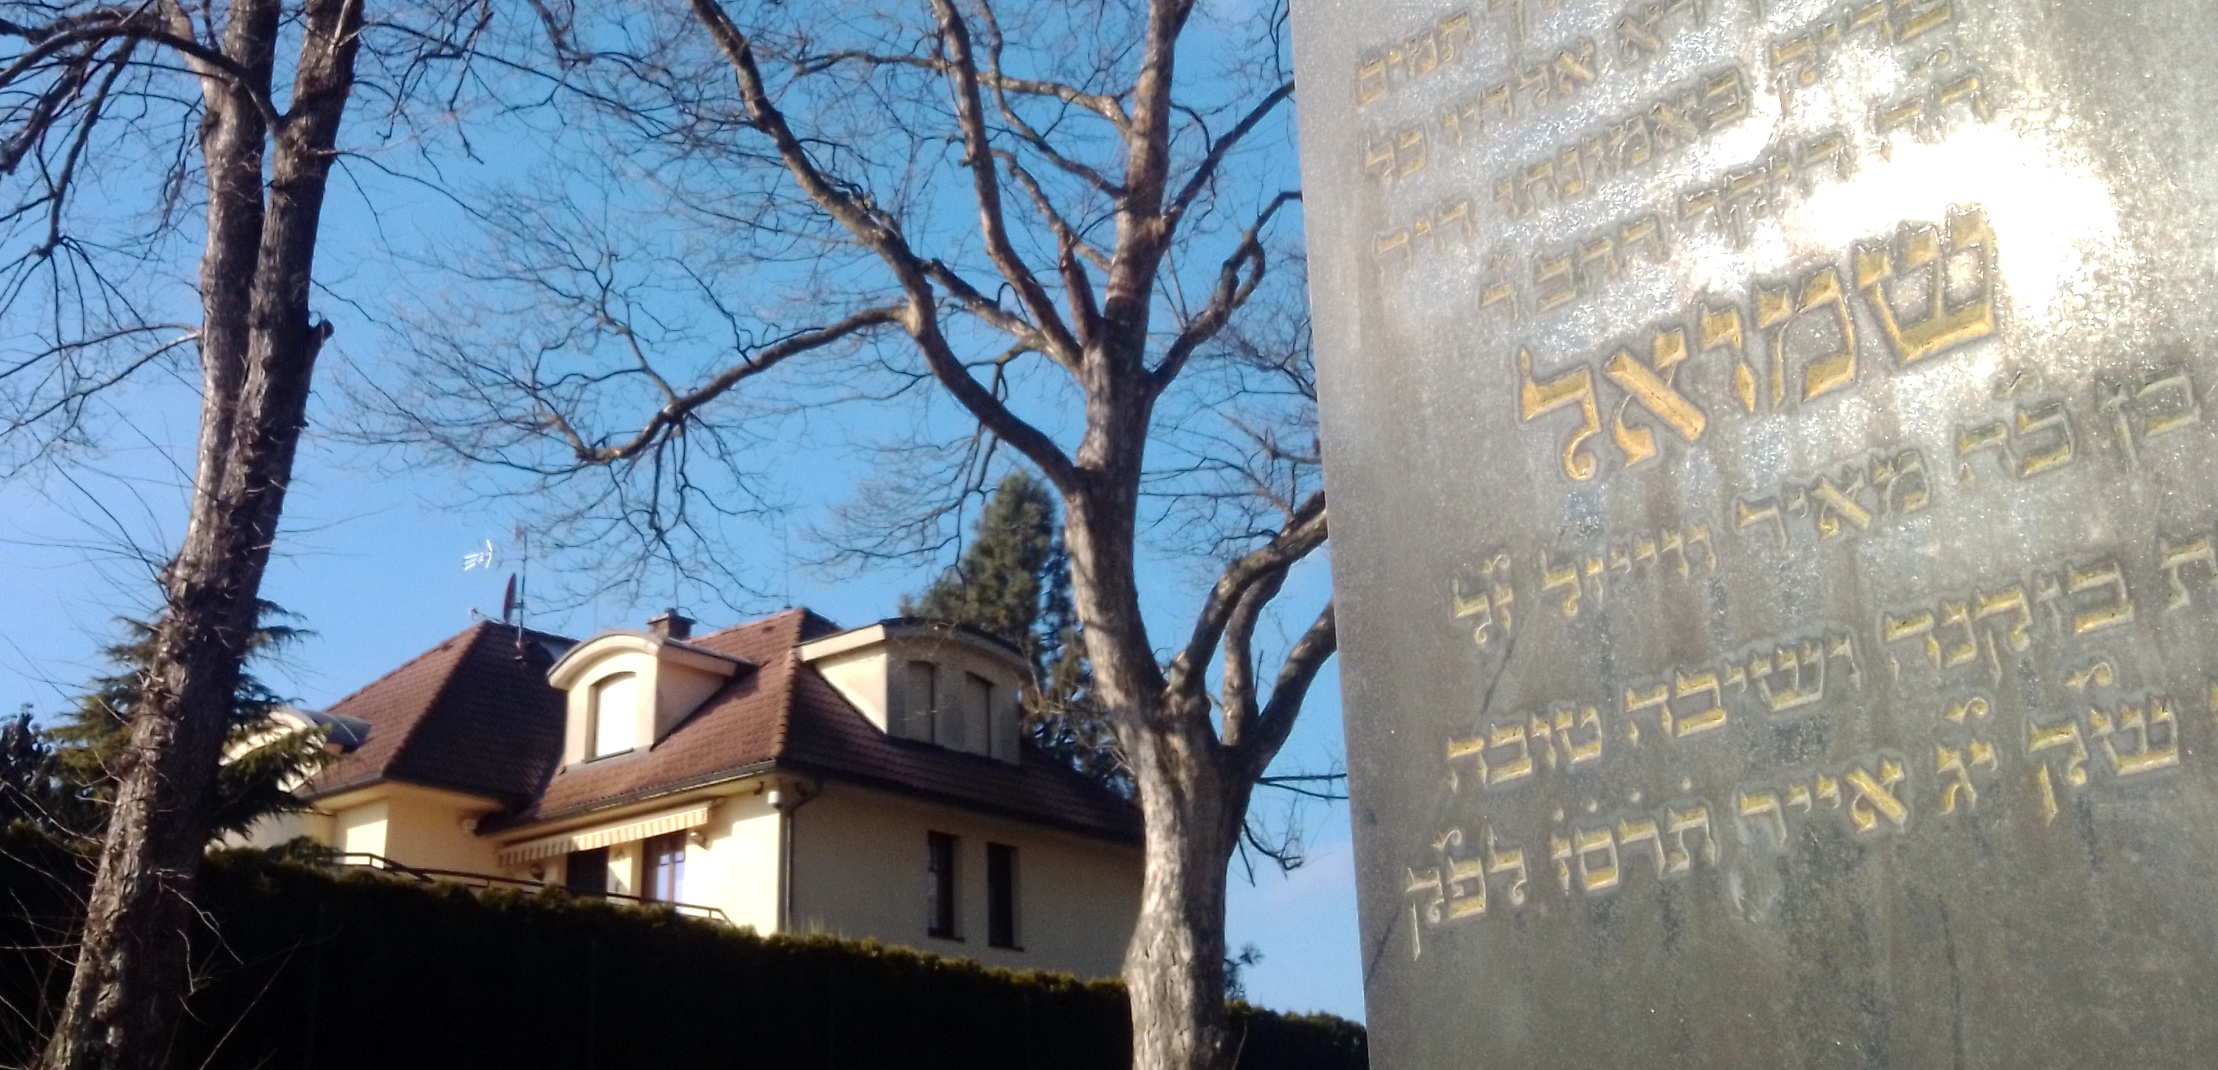 Vila z roku 2004 vedle Židovského hřbitova na Hrádku....jpg